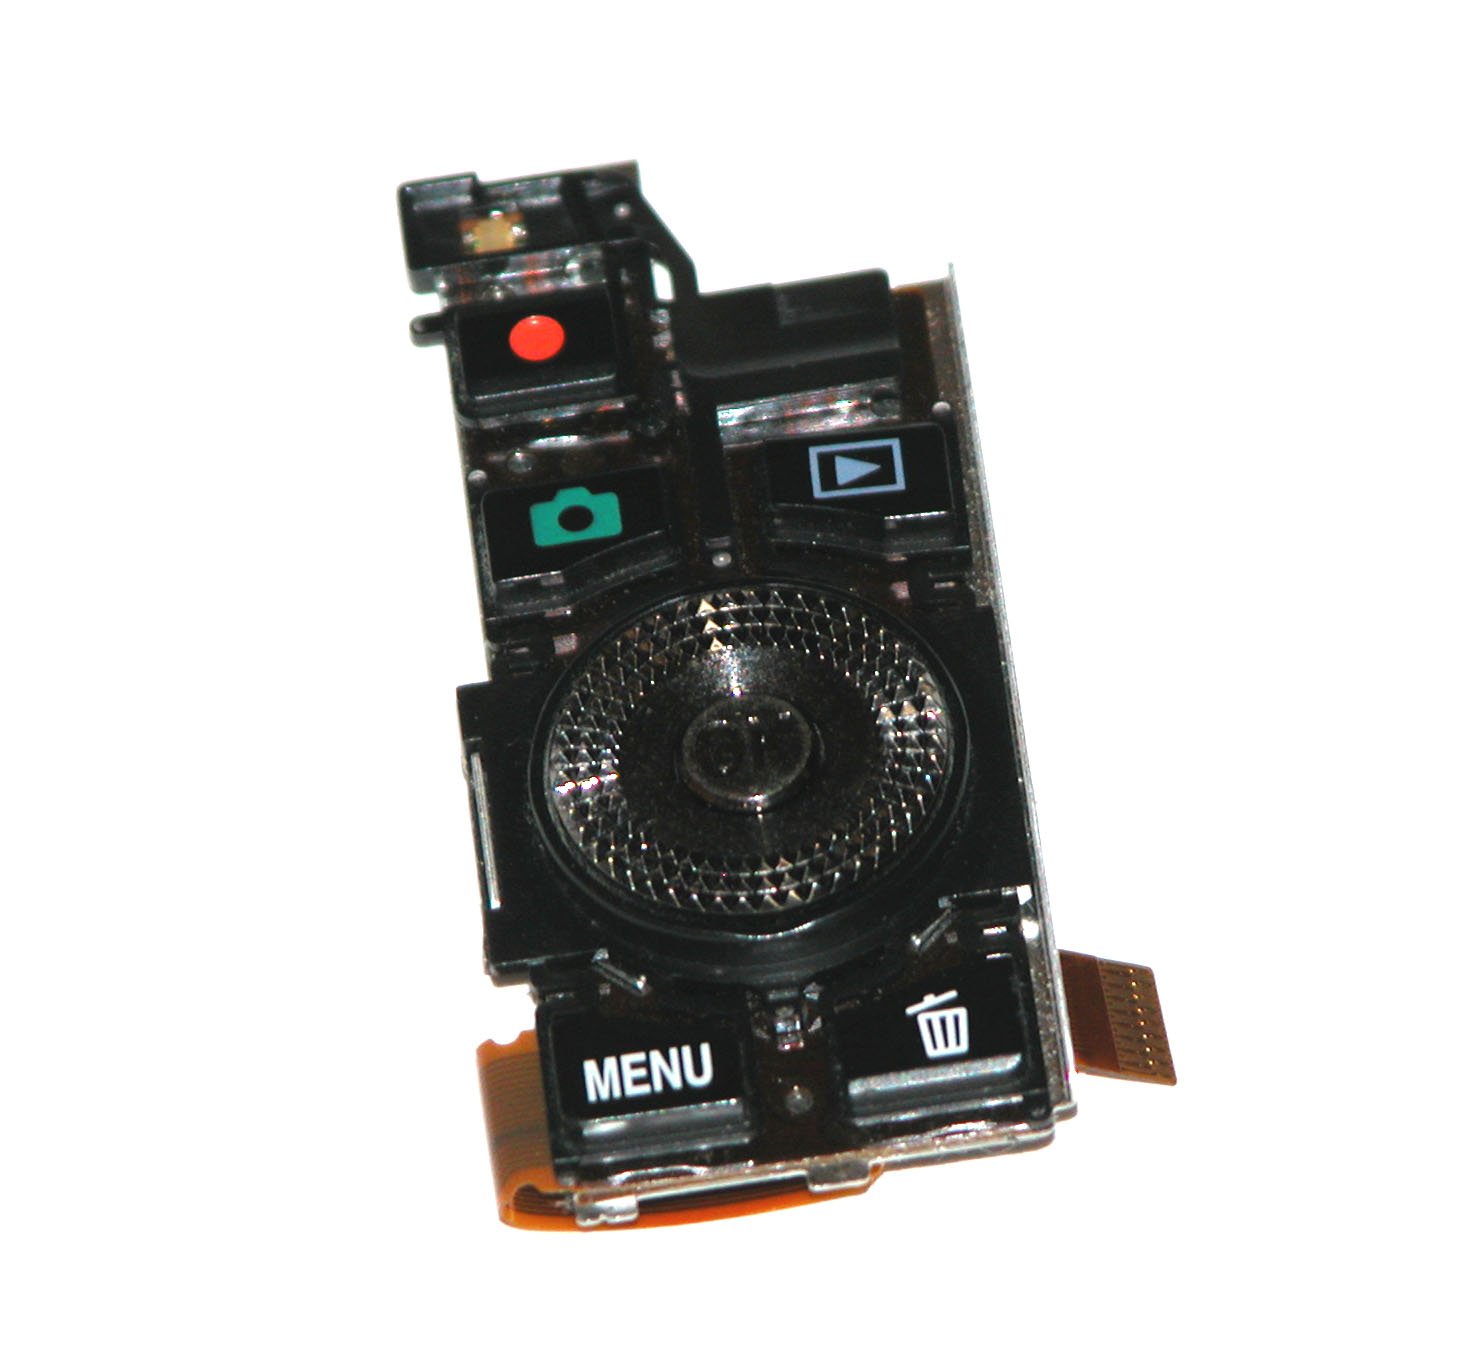 Nikon Coolpix S8000 Digital Camera Rear Control Panel - Repair Parts